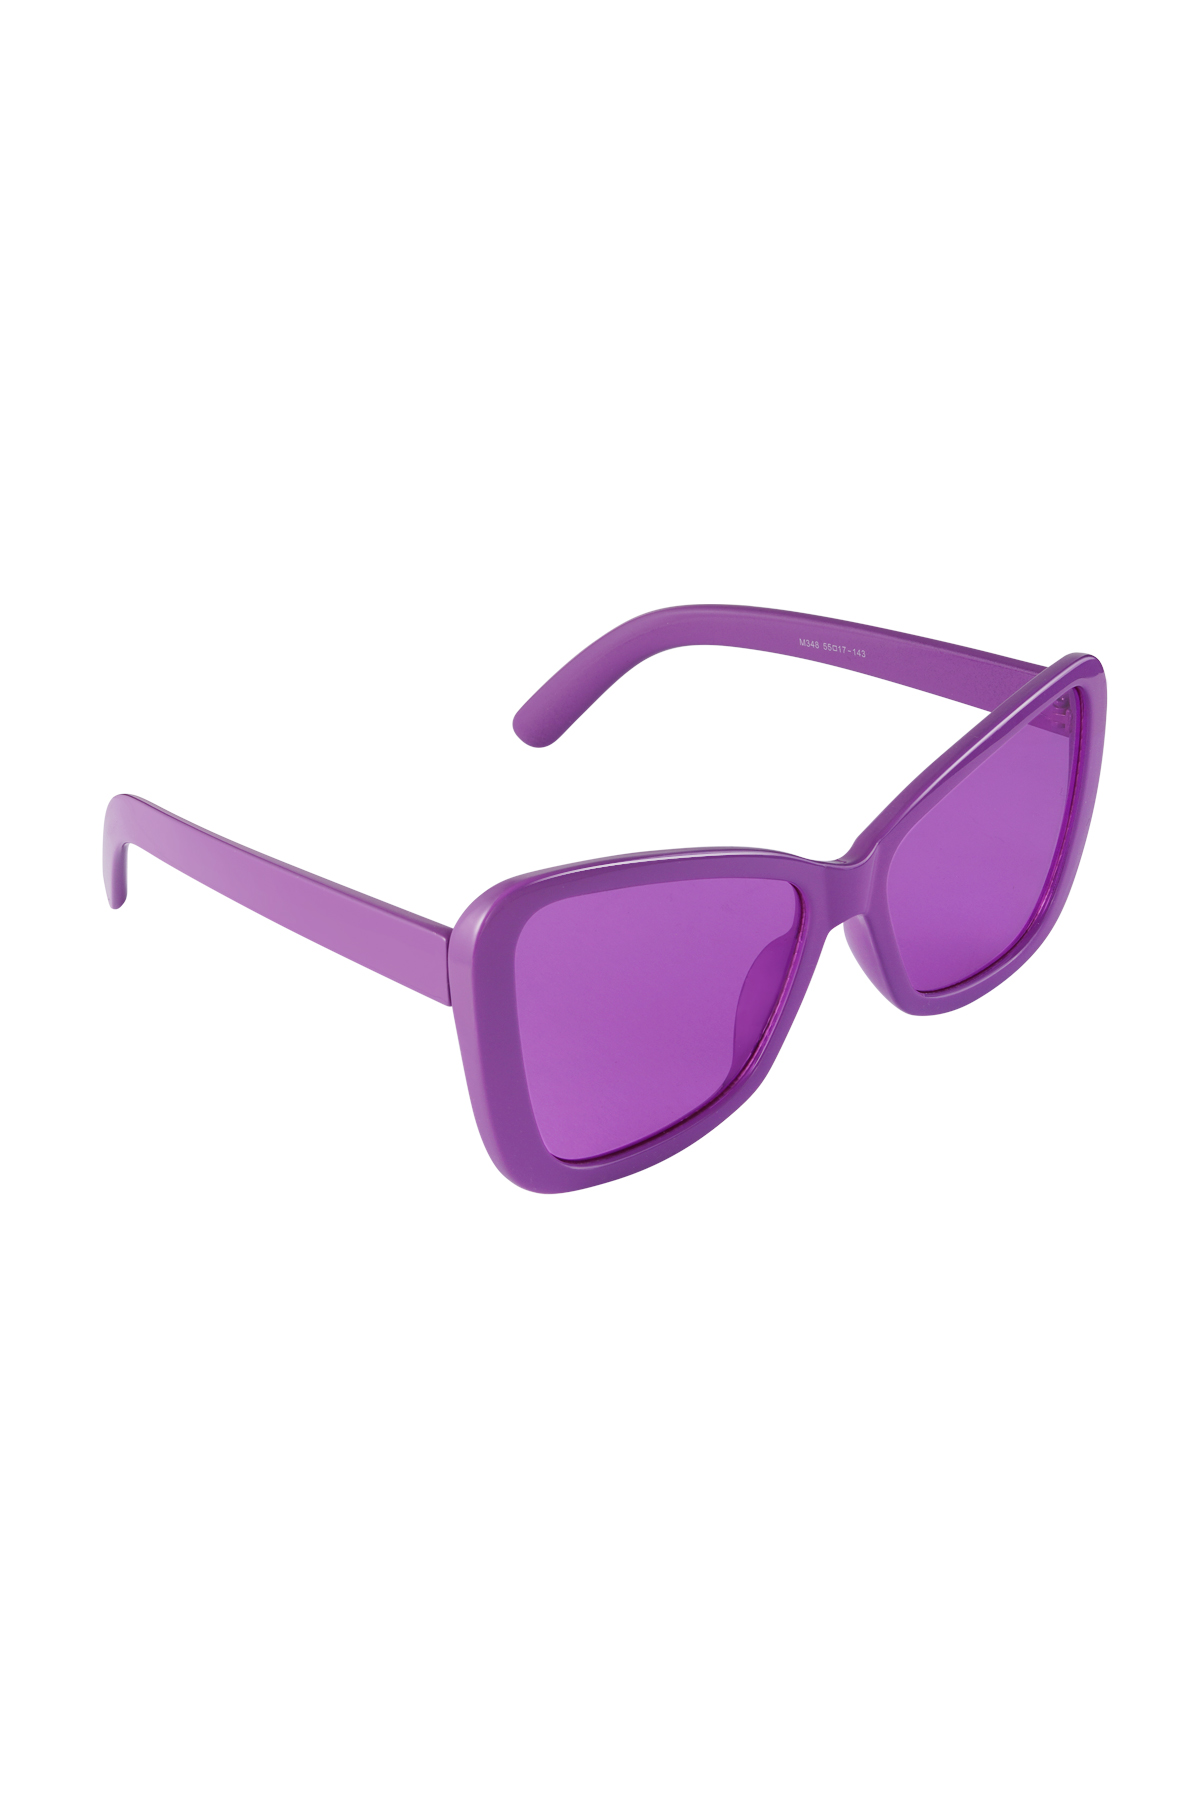 Gafas de sol cat eye simple - violeta